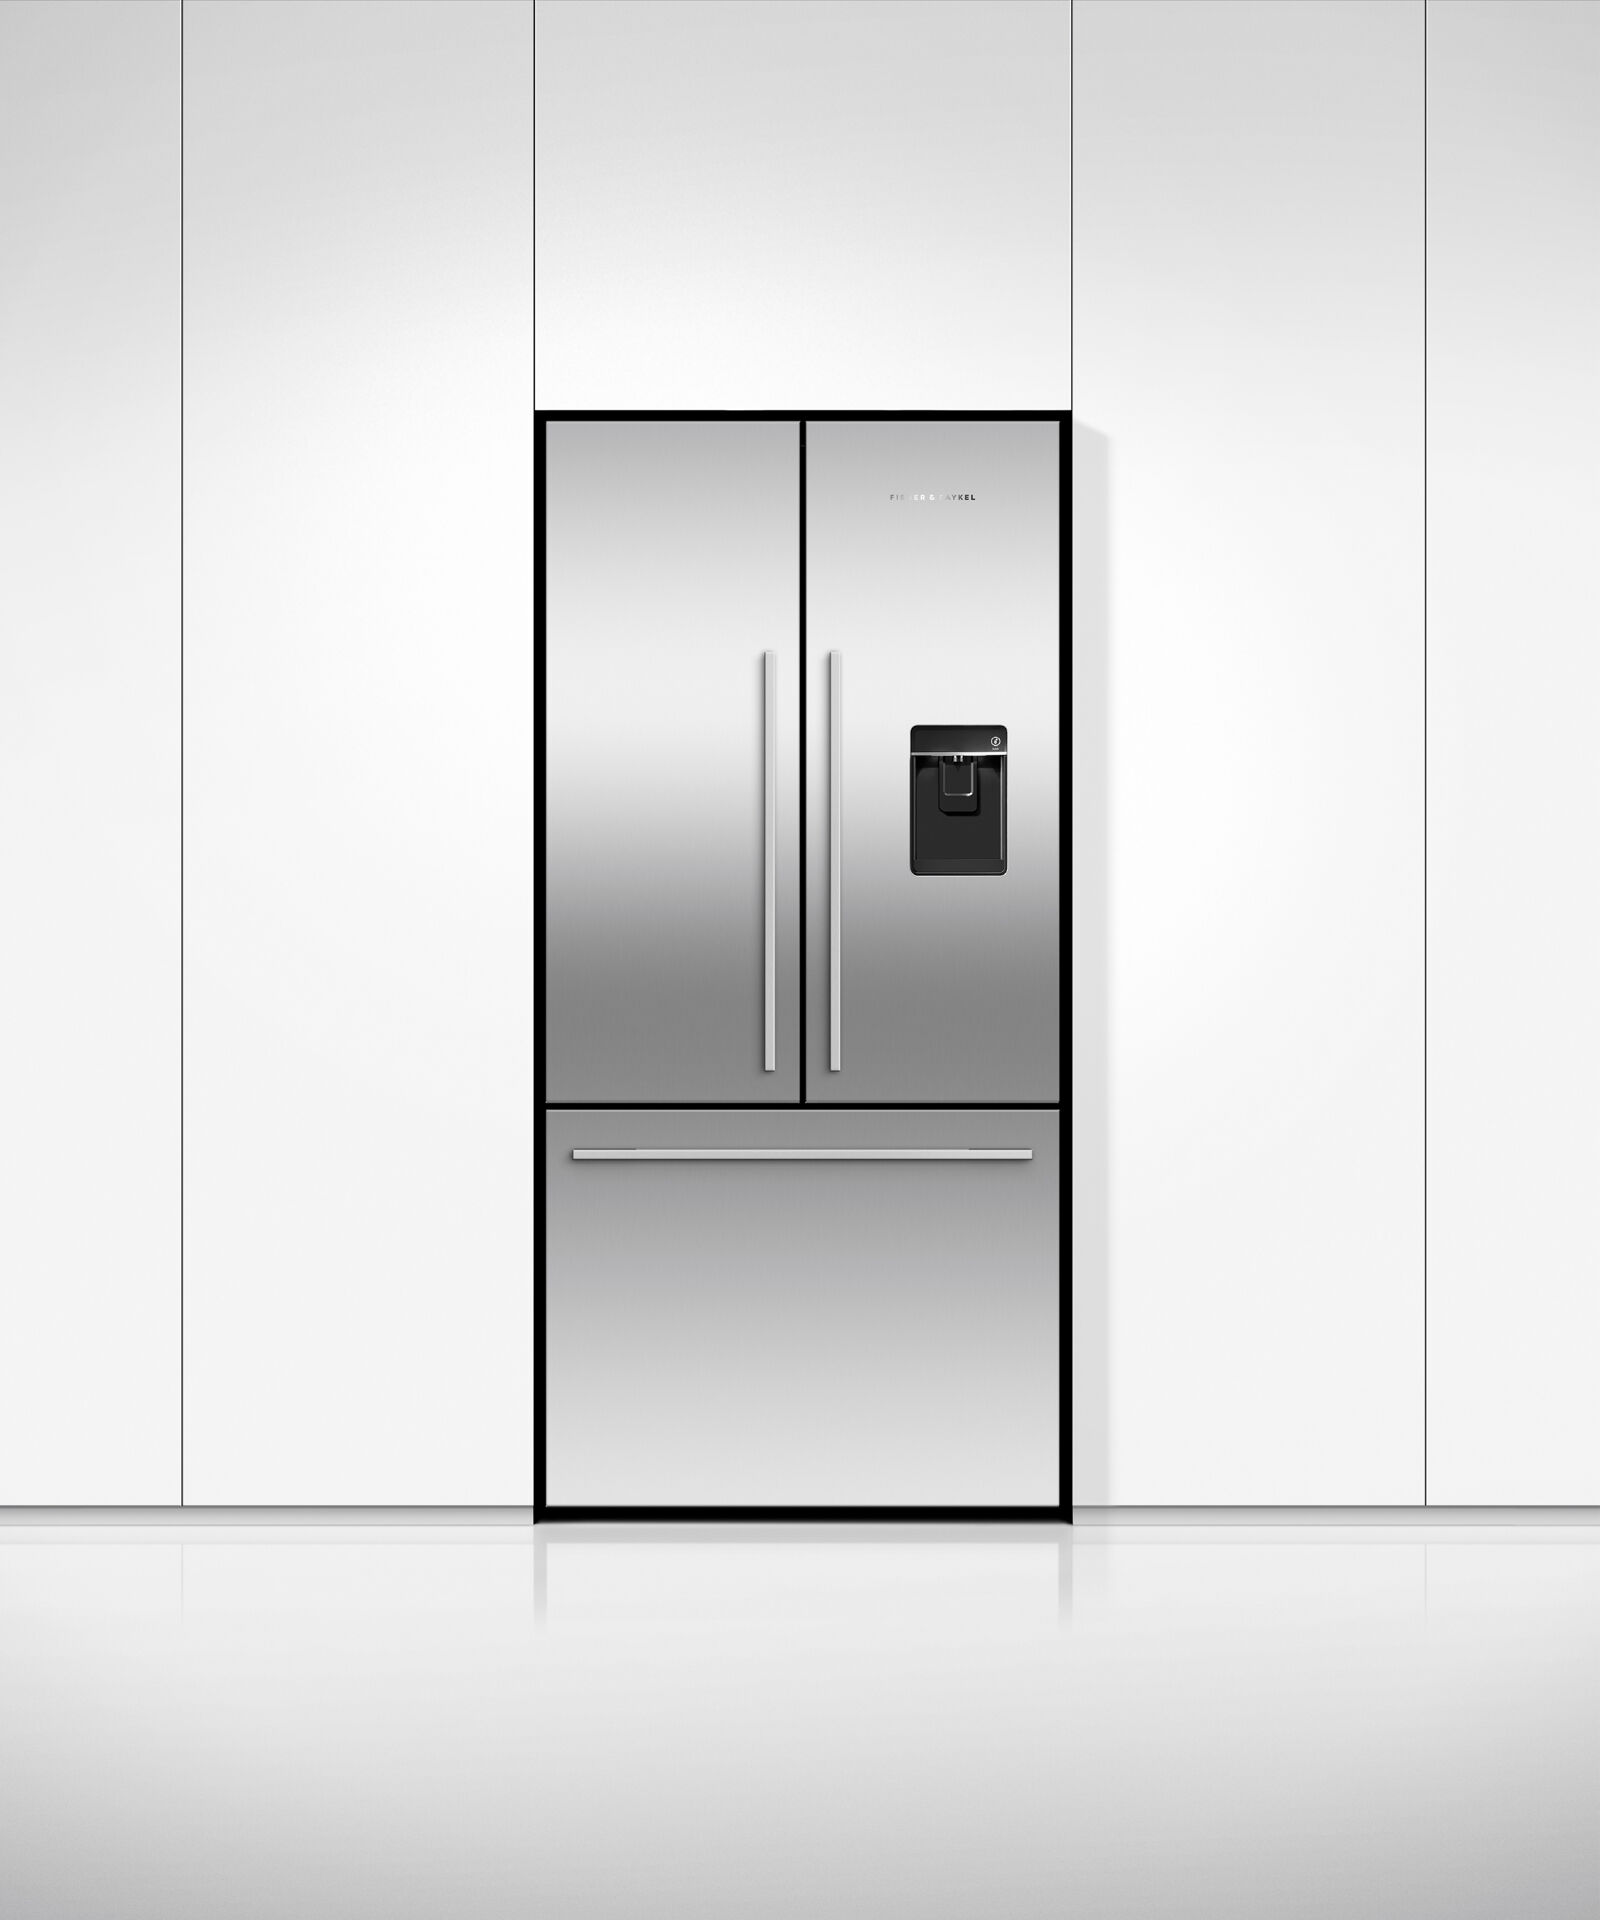 Freestanding French Door Refrigerator Freezer, 79cm, Ice & Water gallery image 3.0